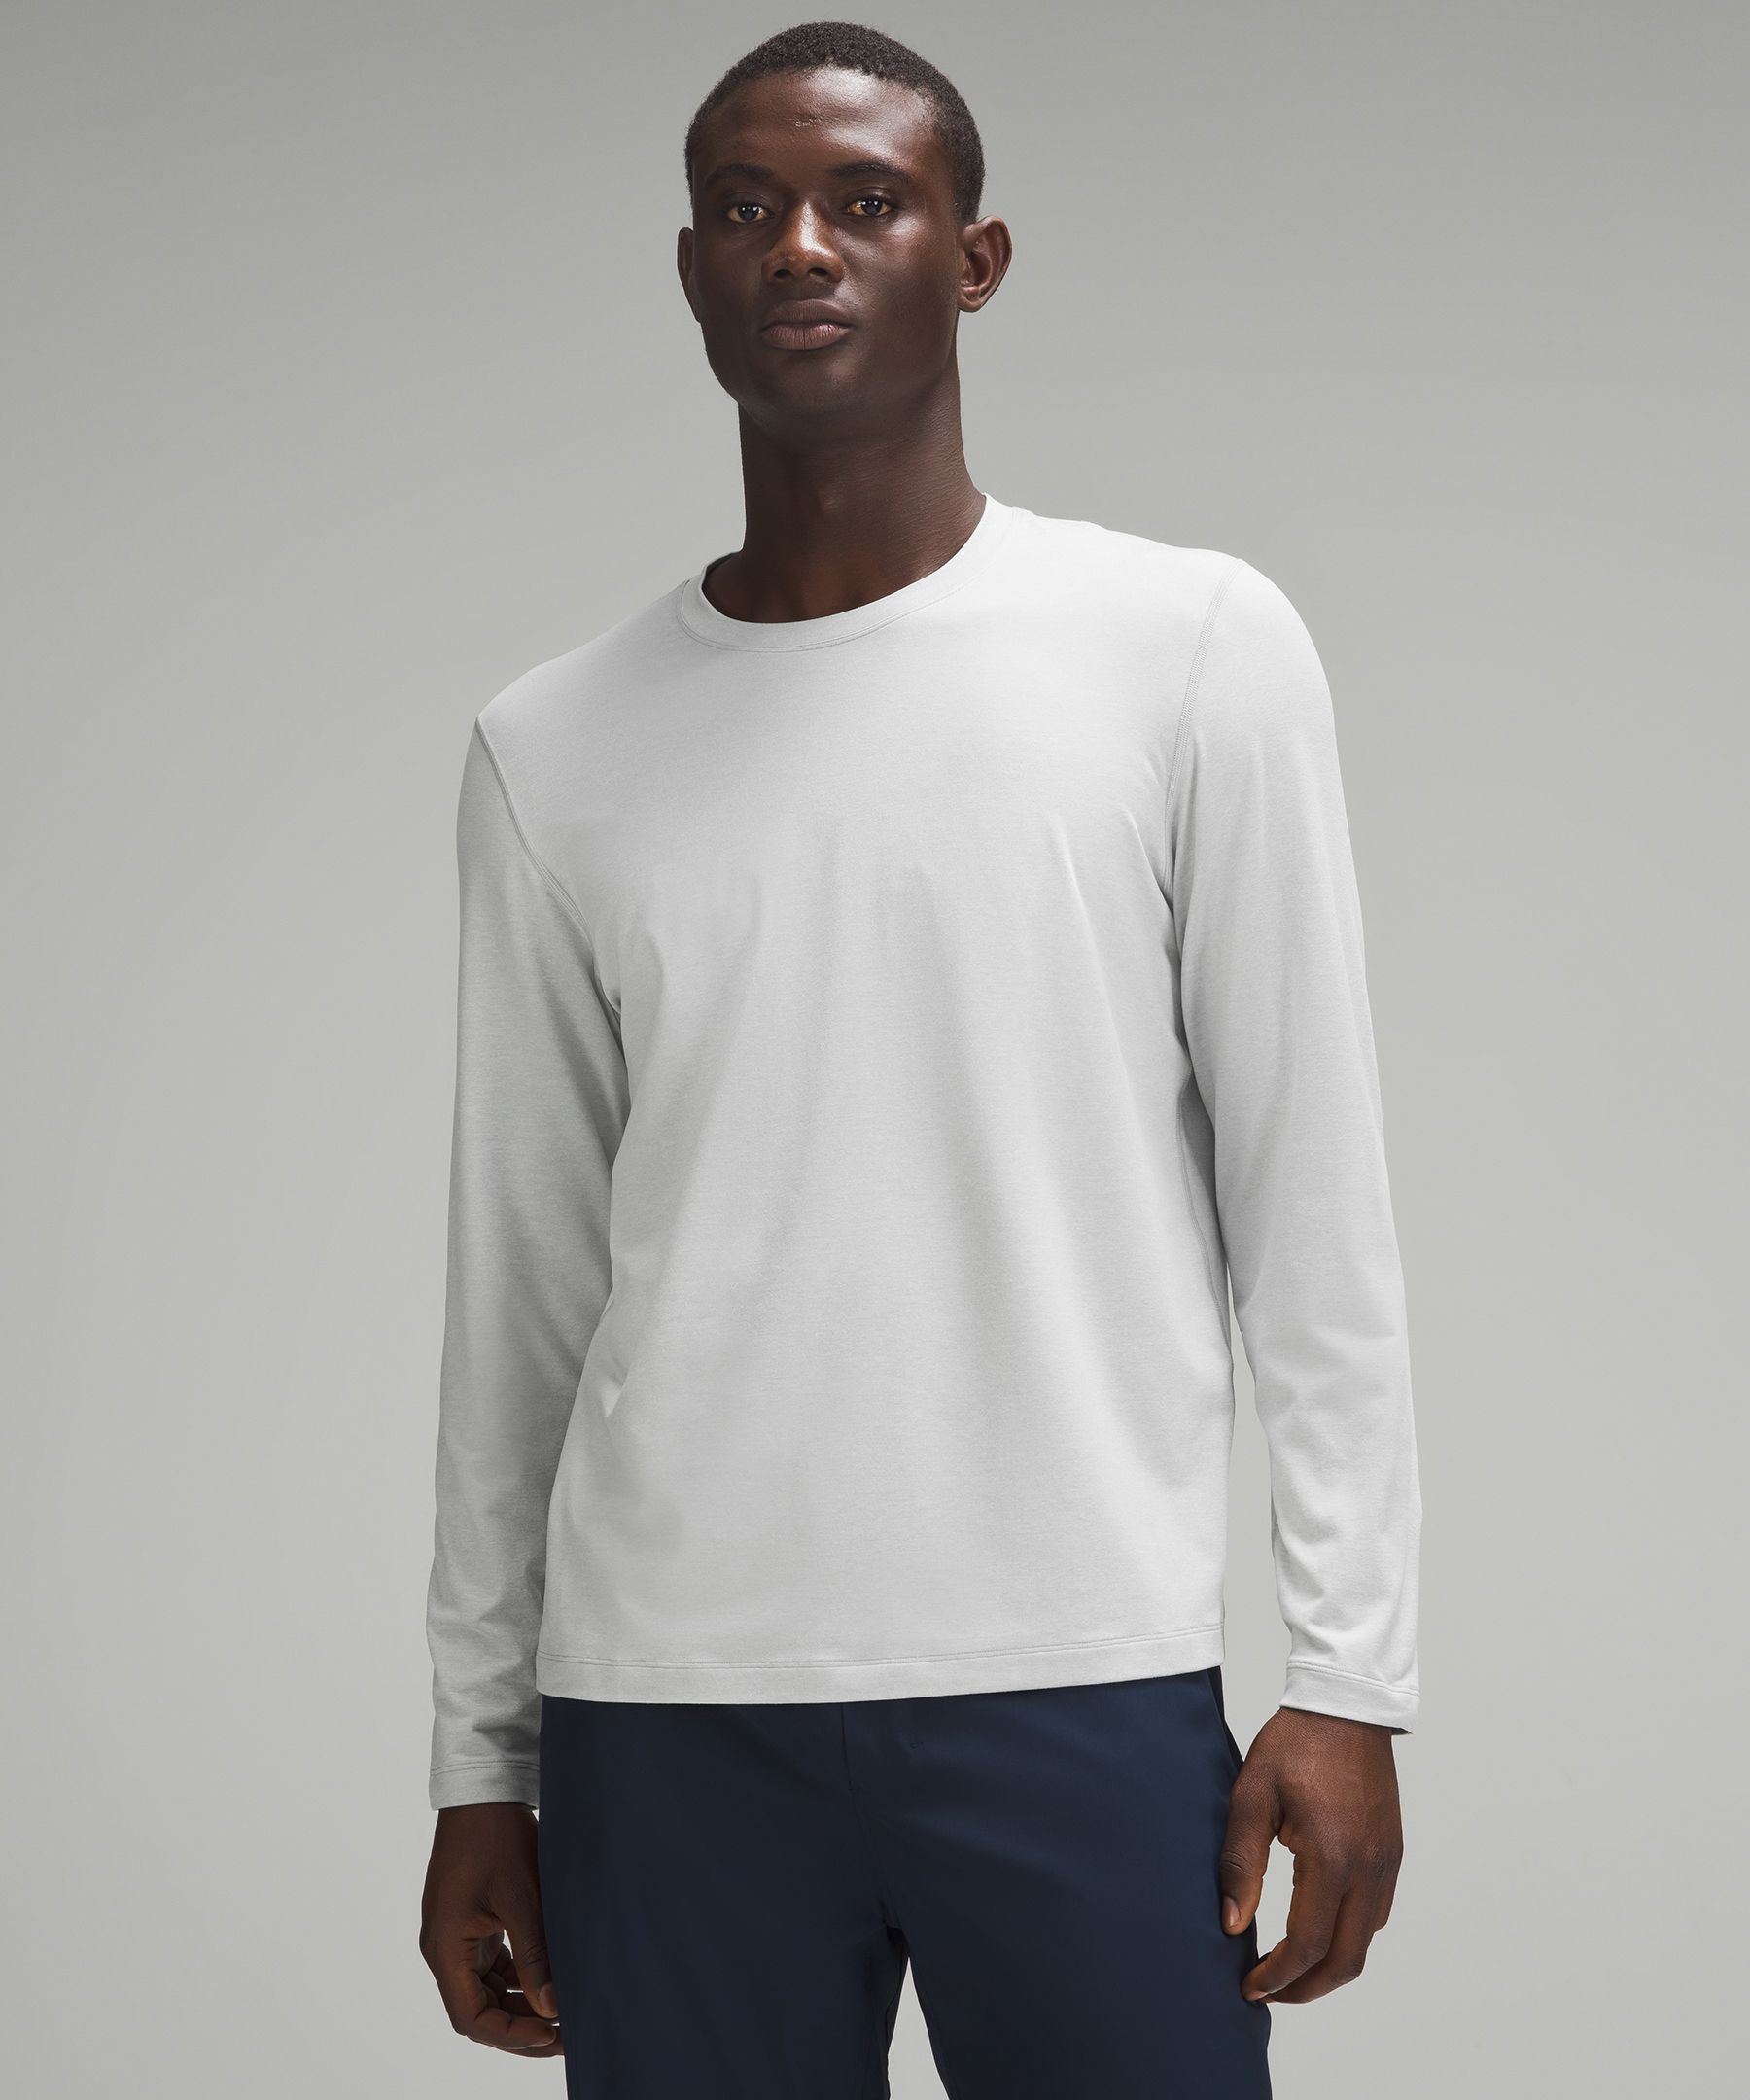 Soft Jersey Long-Sleeve Shirt